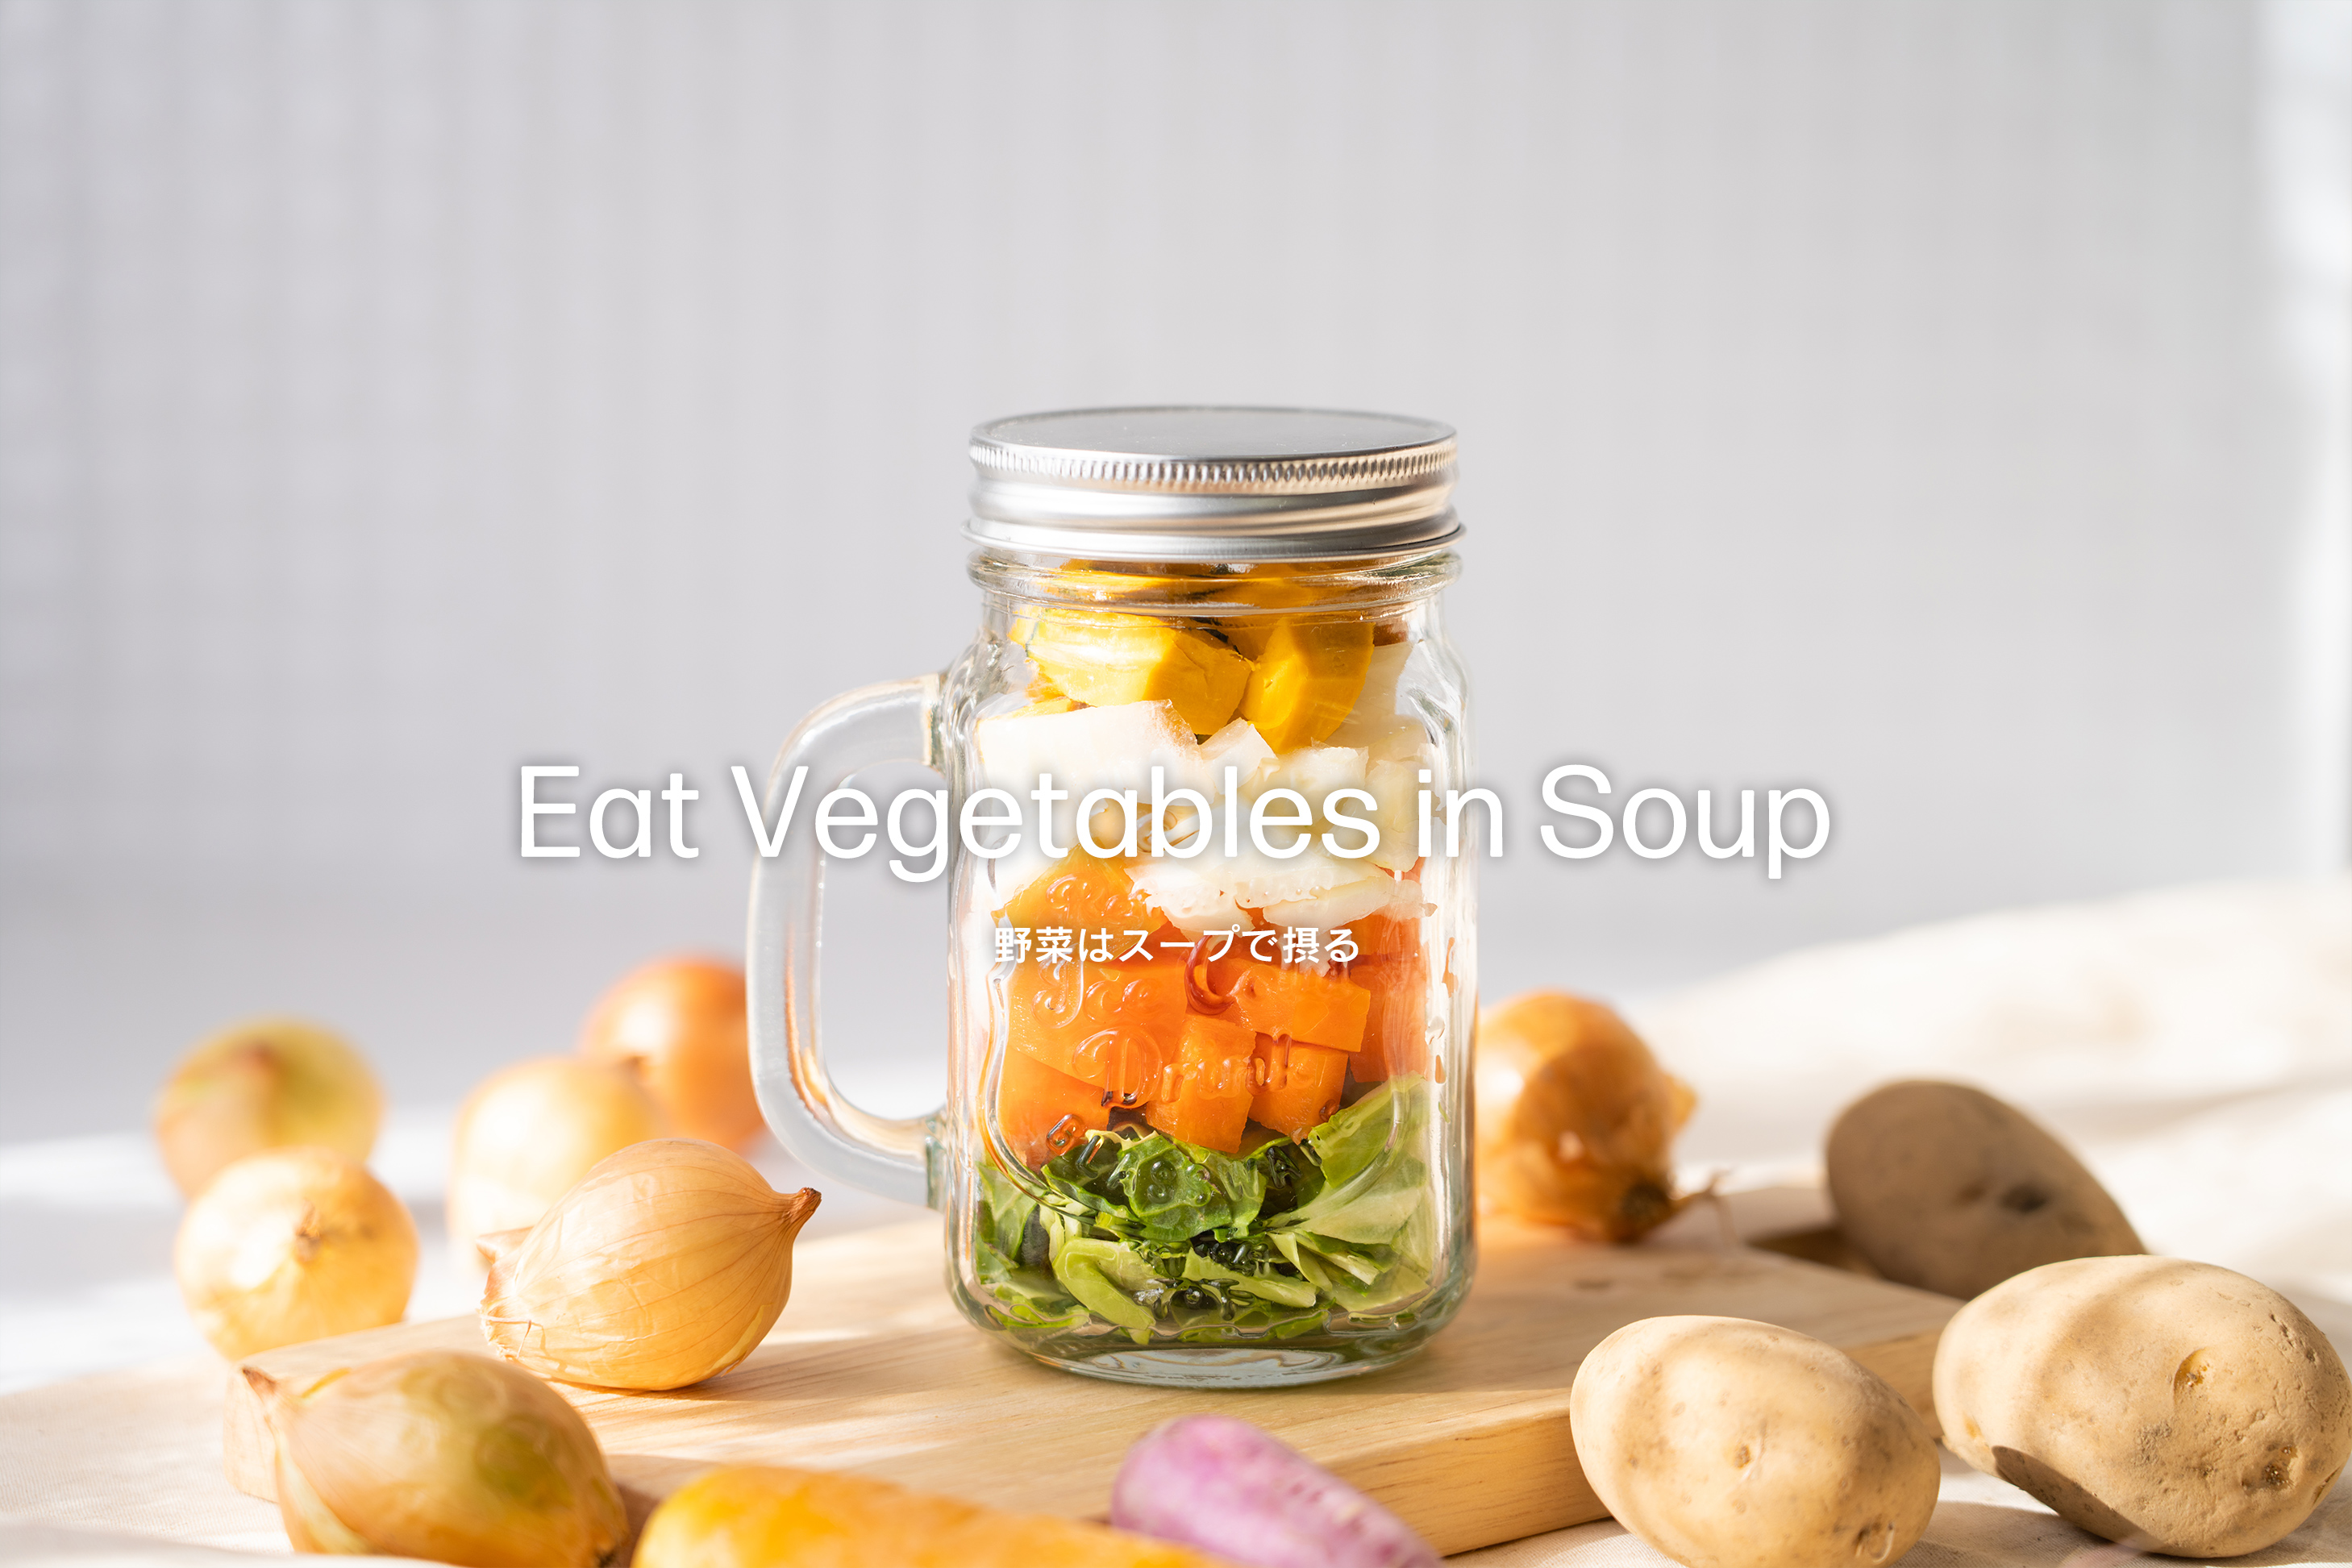 Eat Vegetables in Soup